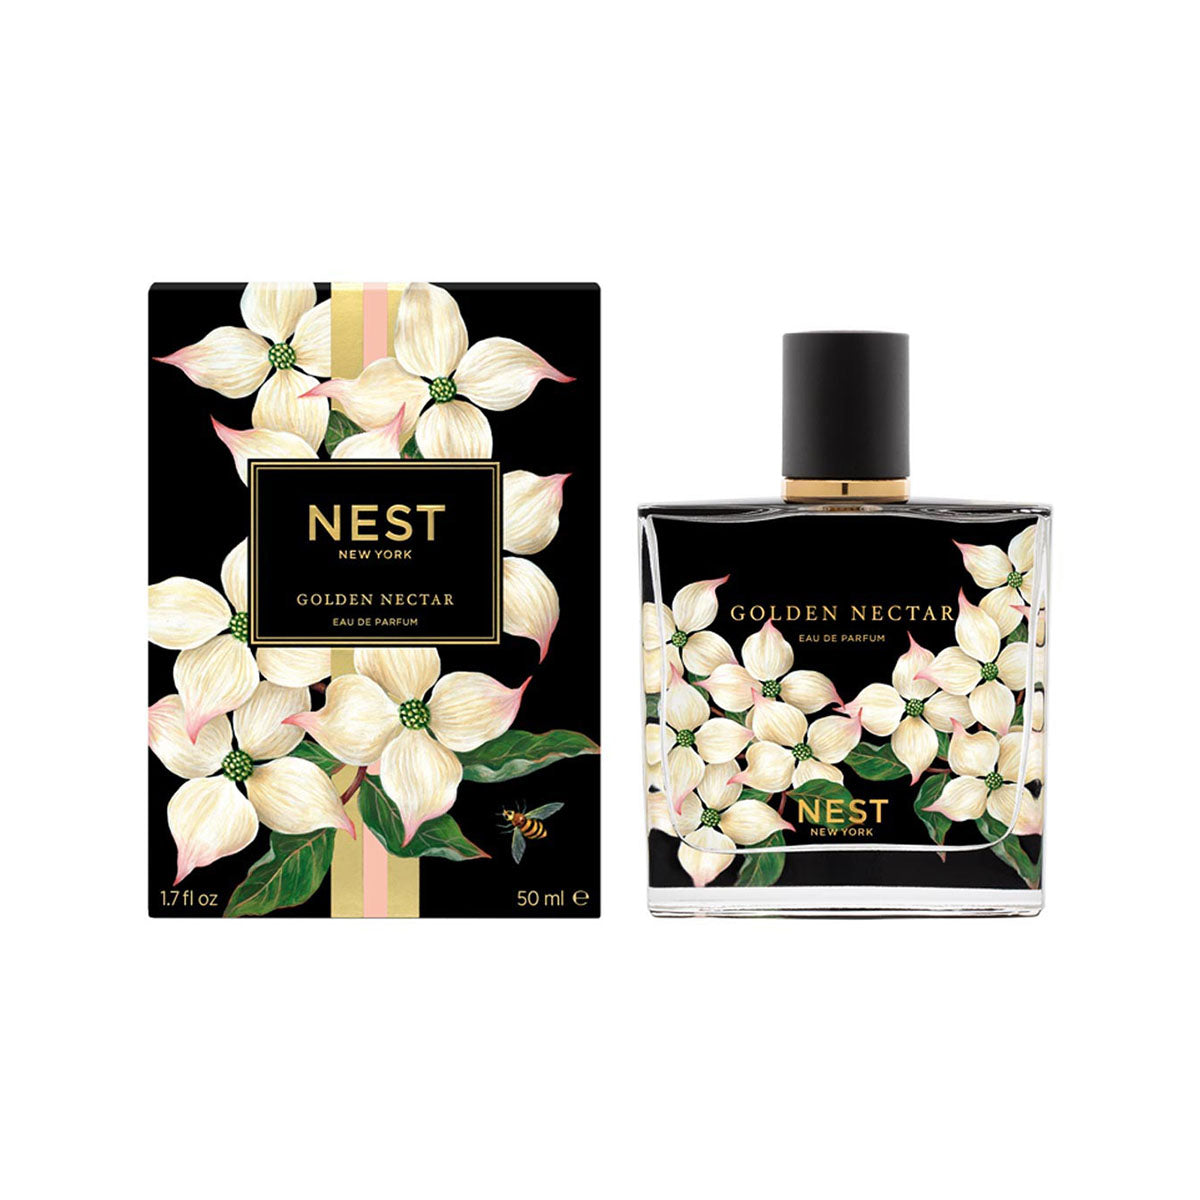 Nest Eau De Parfum 50 mL/1.7 fl oz. - Golden Nectar